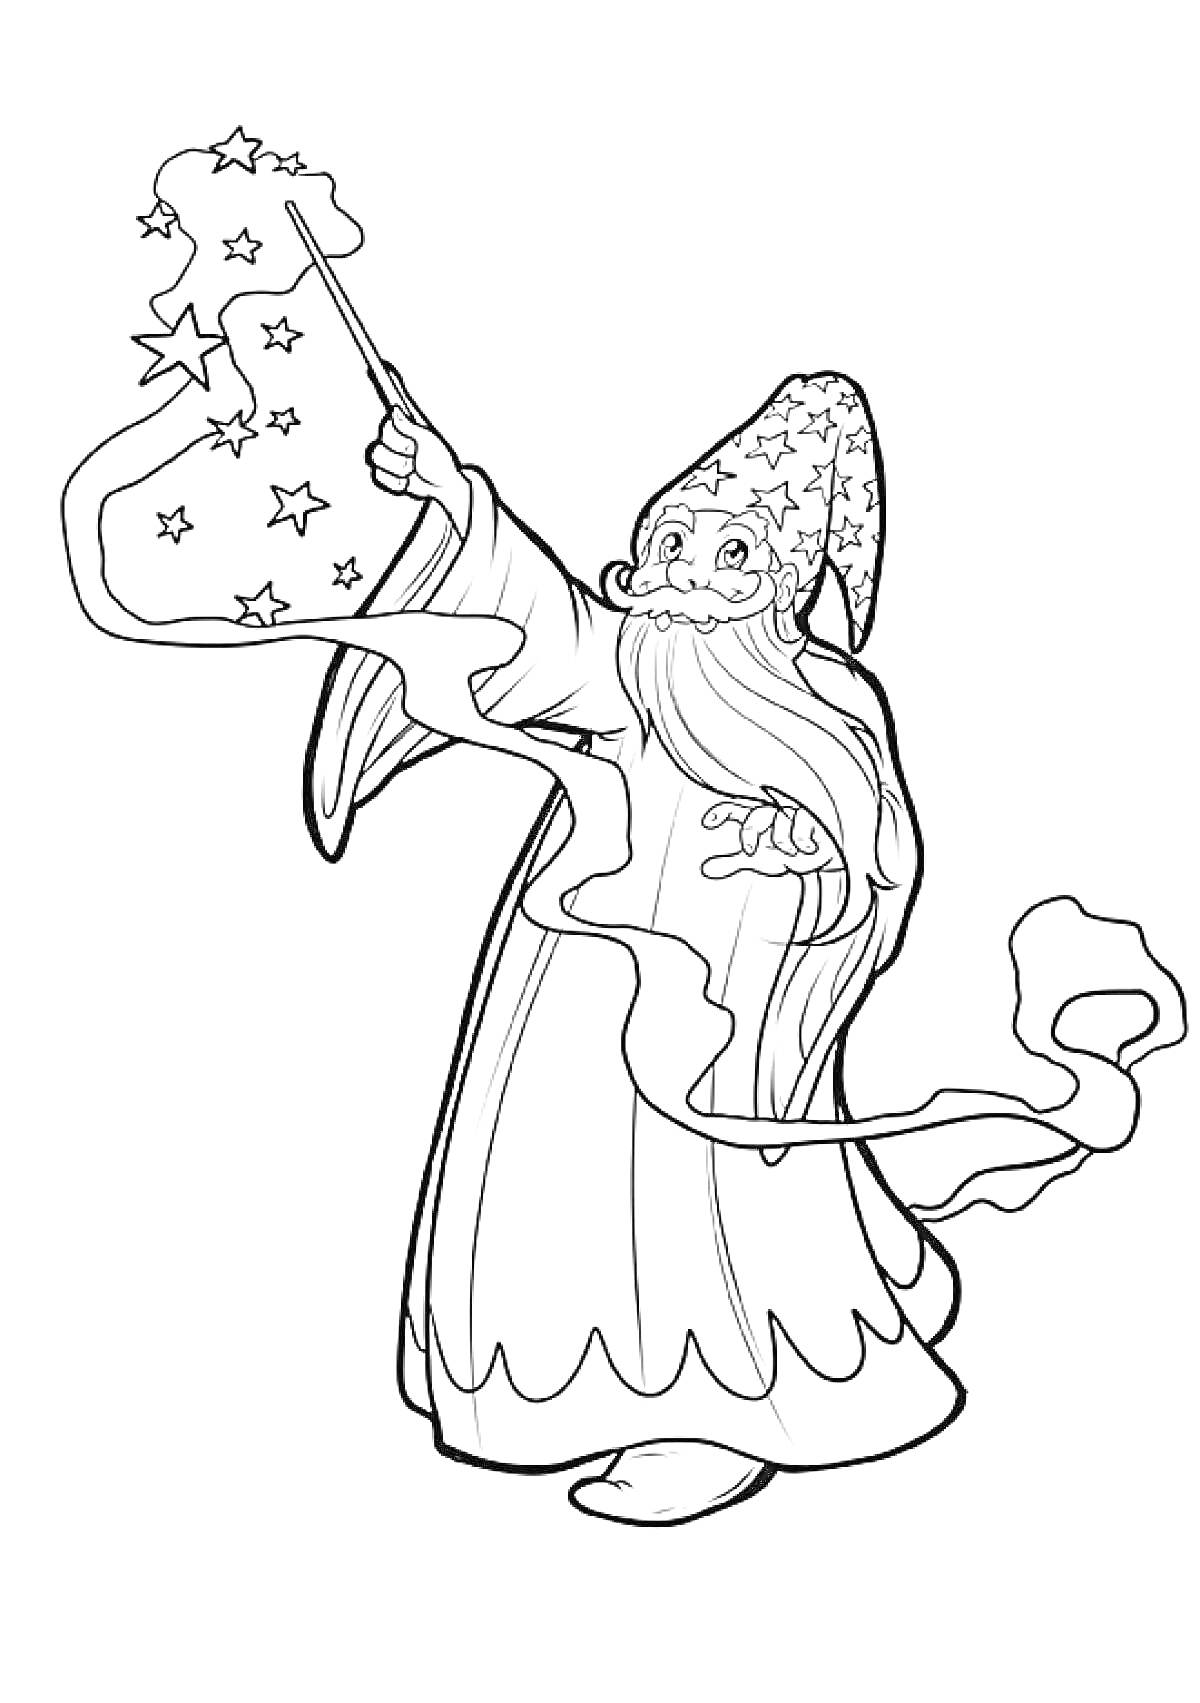 Раскраска Волшебник с длинной бородой, в остроконечной шляпе с узорами, держащий волшебную палочку, из которой вылетают звёзды и ленты